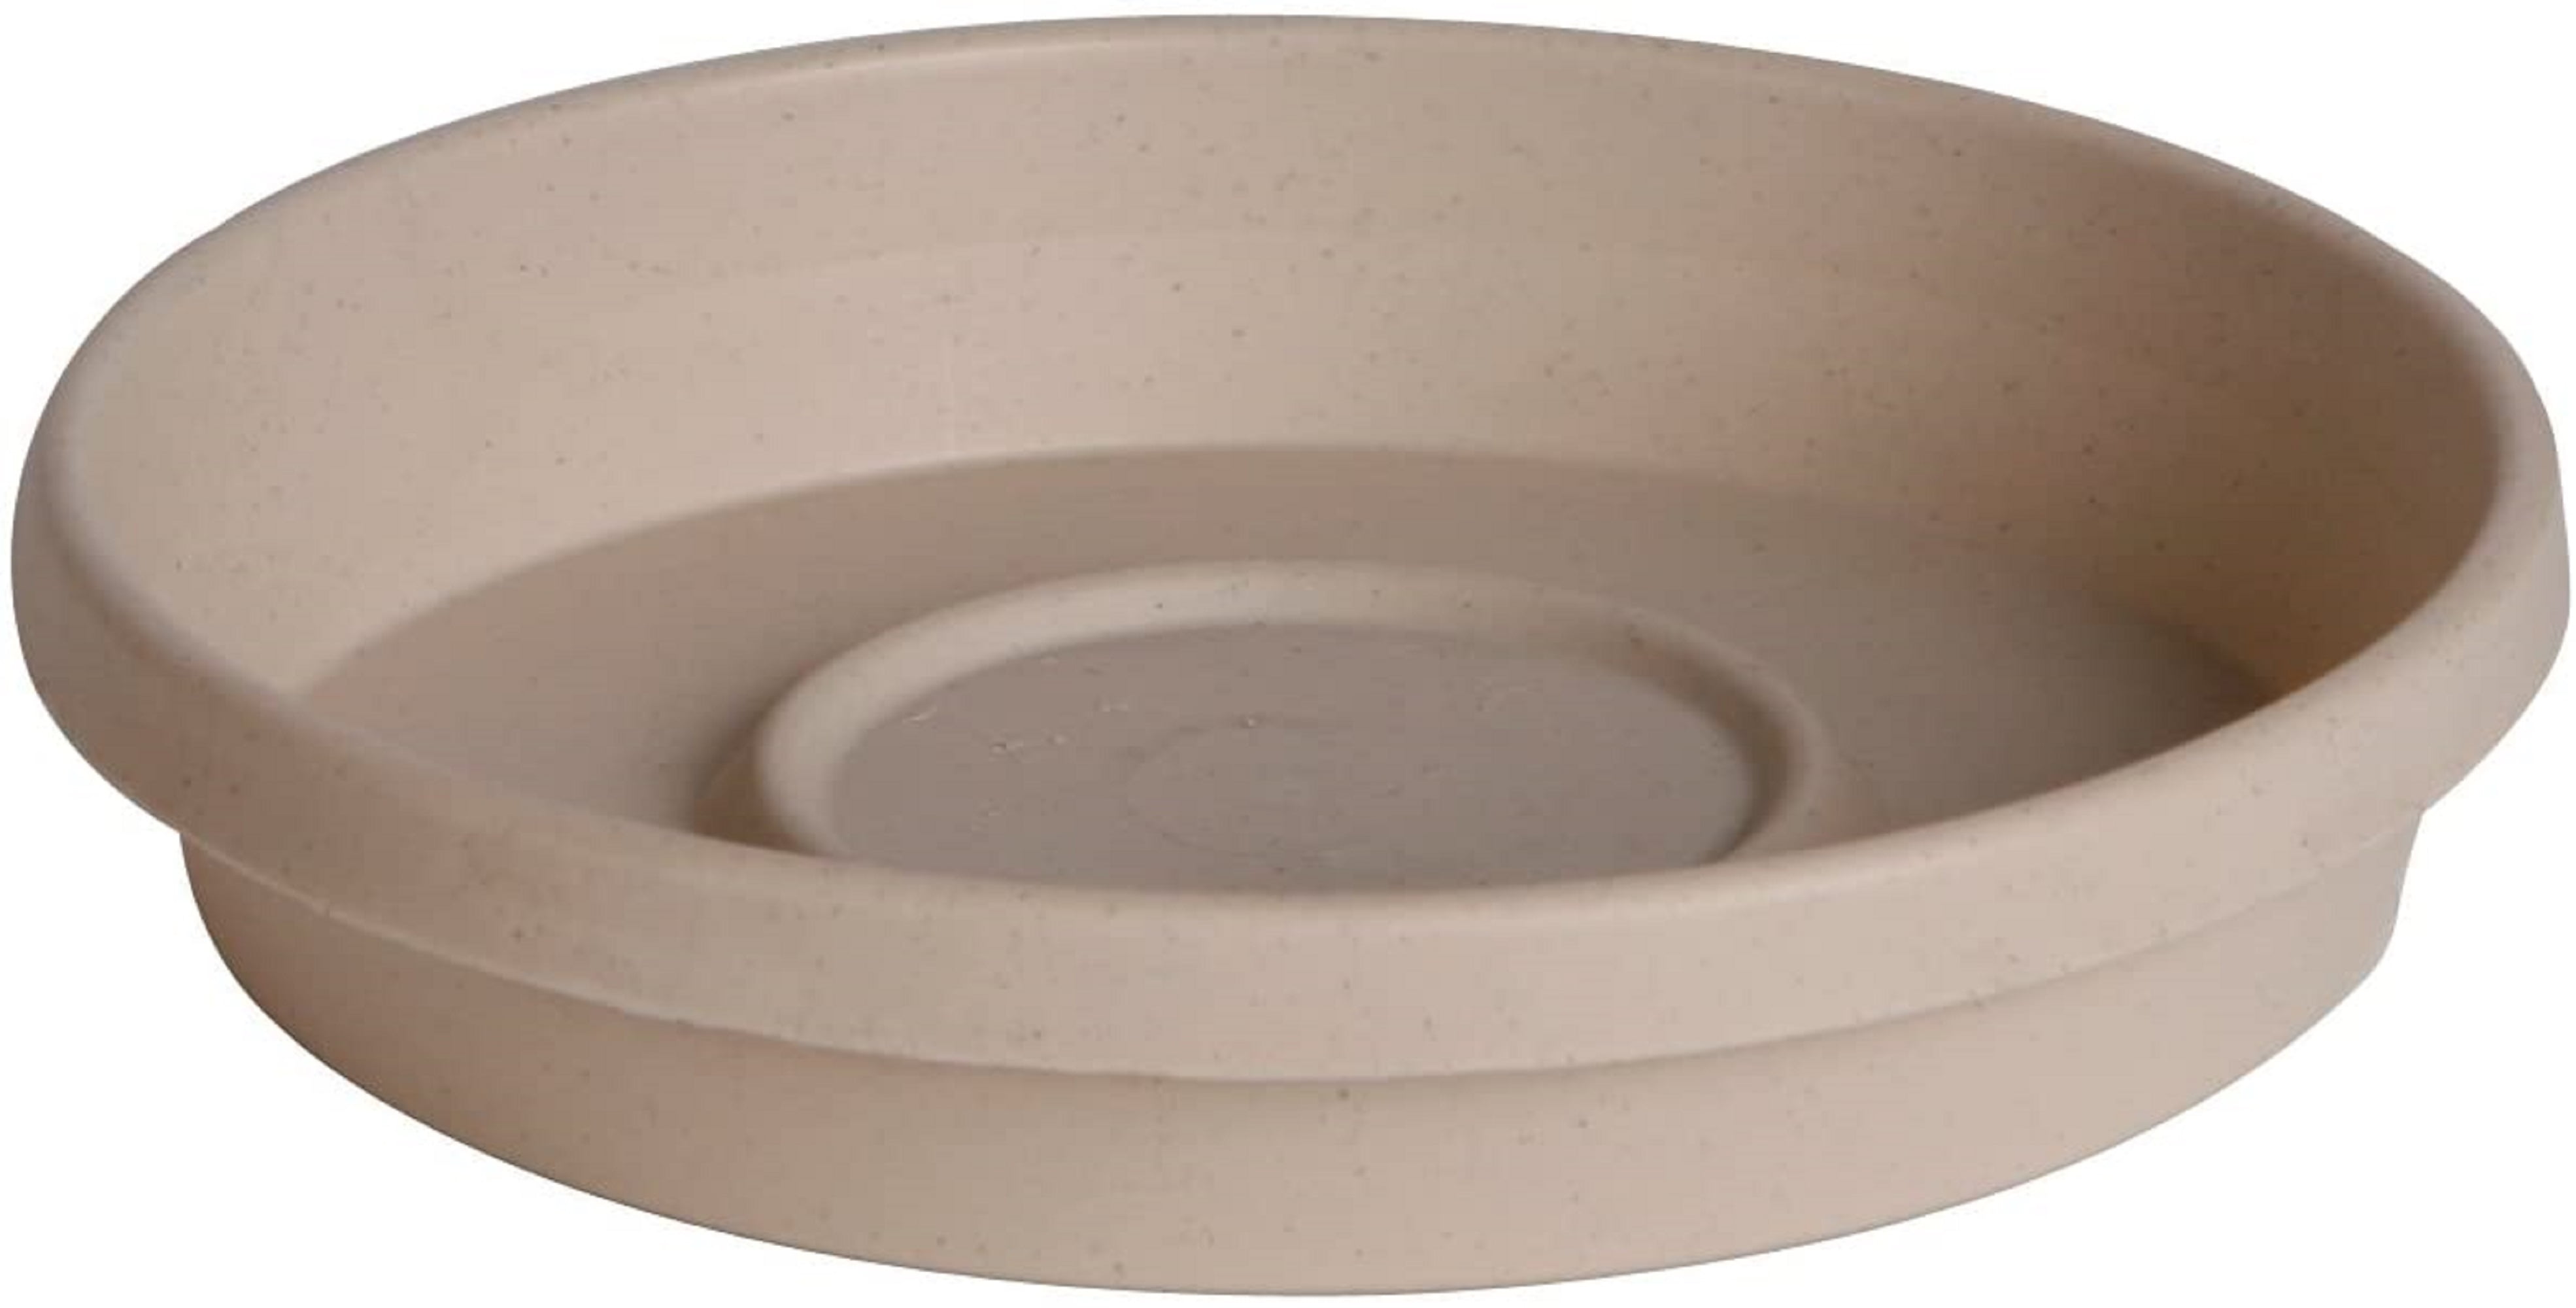 Saucers Clay Pot